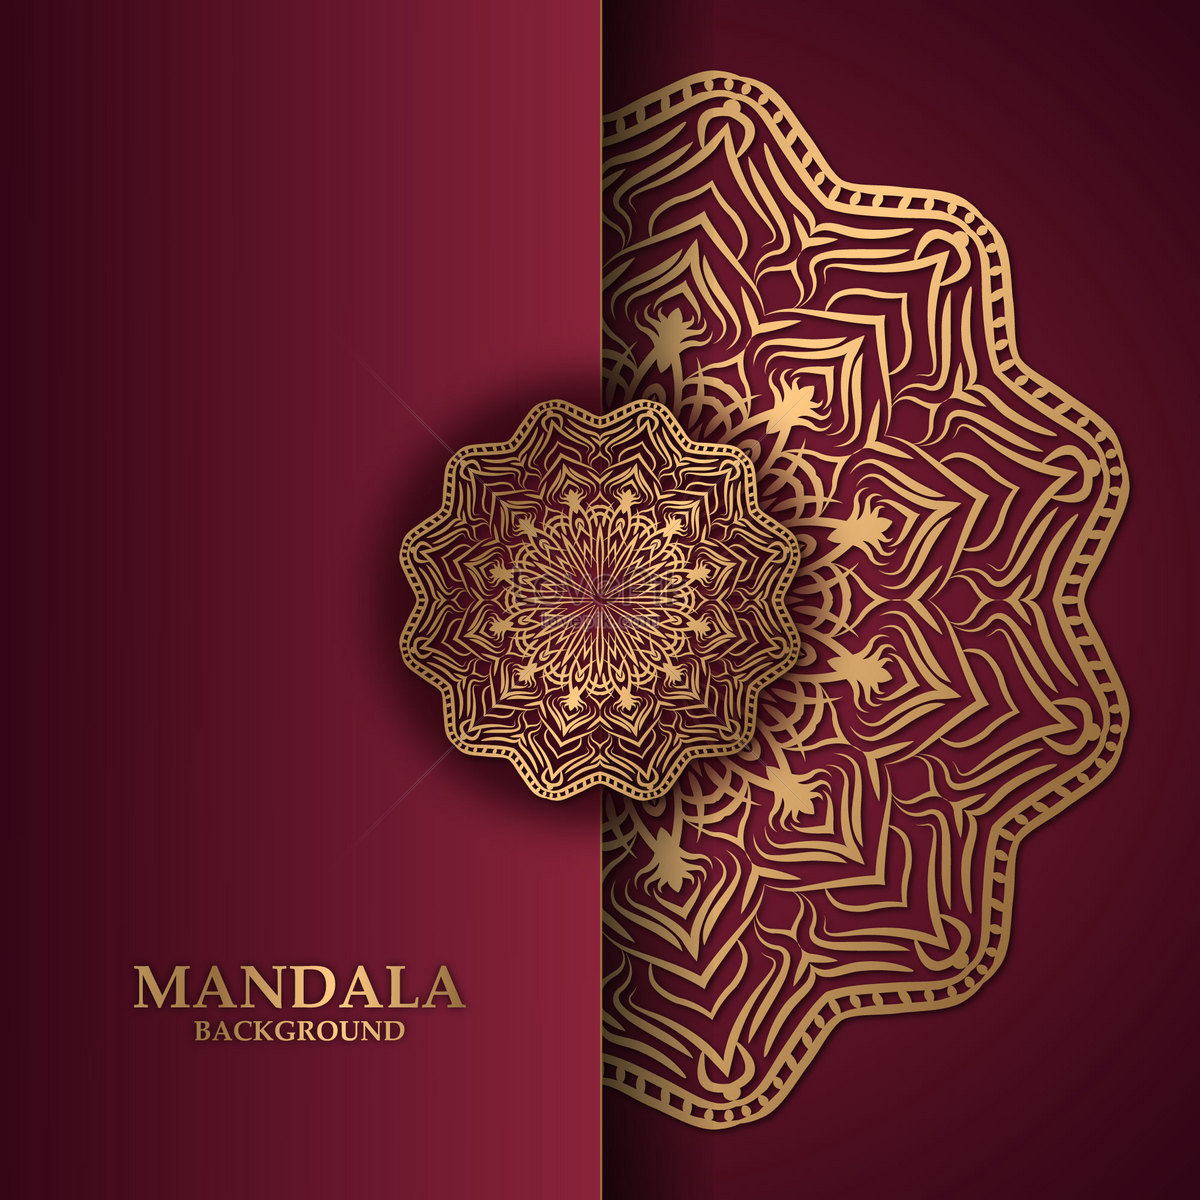 Mandala thiết kế nền sang trọng là một trong những loại hình nghệ thuật đang rất hot trên thị trường hiện nay. Sự tinh tế và độc đáo của mandala sẽ khiến bạn yêu thích ngay từ cái nhìn đầu tiên. Hãy xem ngay để khám phá những thiết kế mandala đẳng cấp nhất.